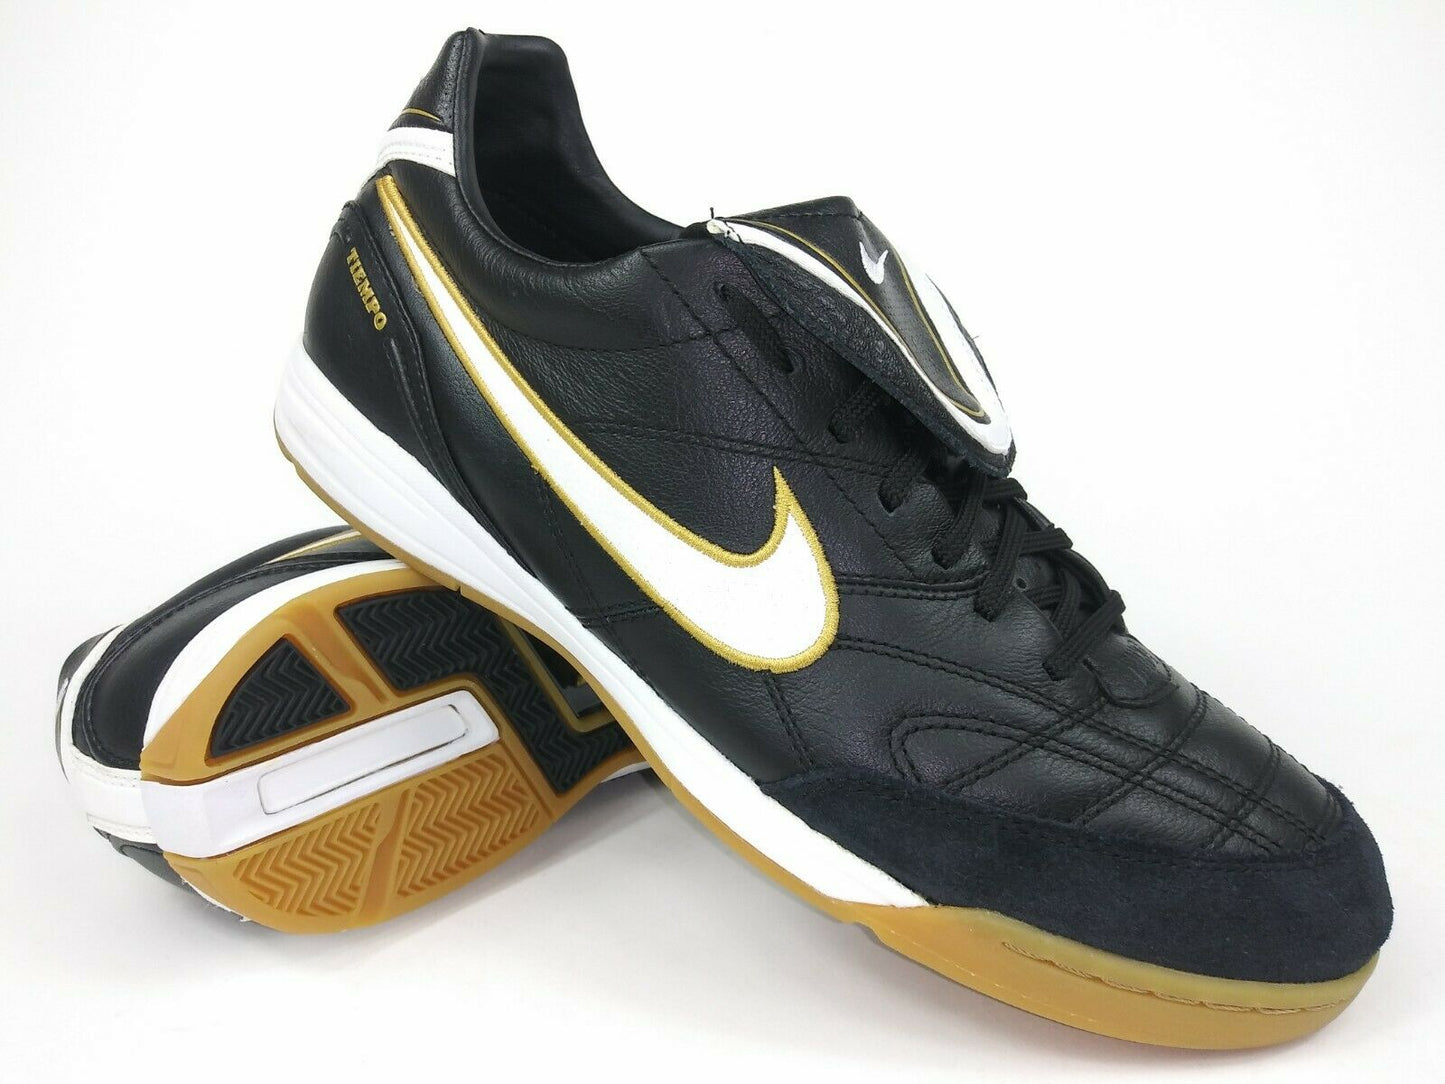 Perpetuo Relativo decidir Nike Tiempo lll IC Indoor Shoes Black Gold – Villegas Footwear